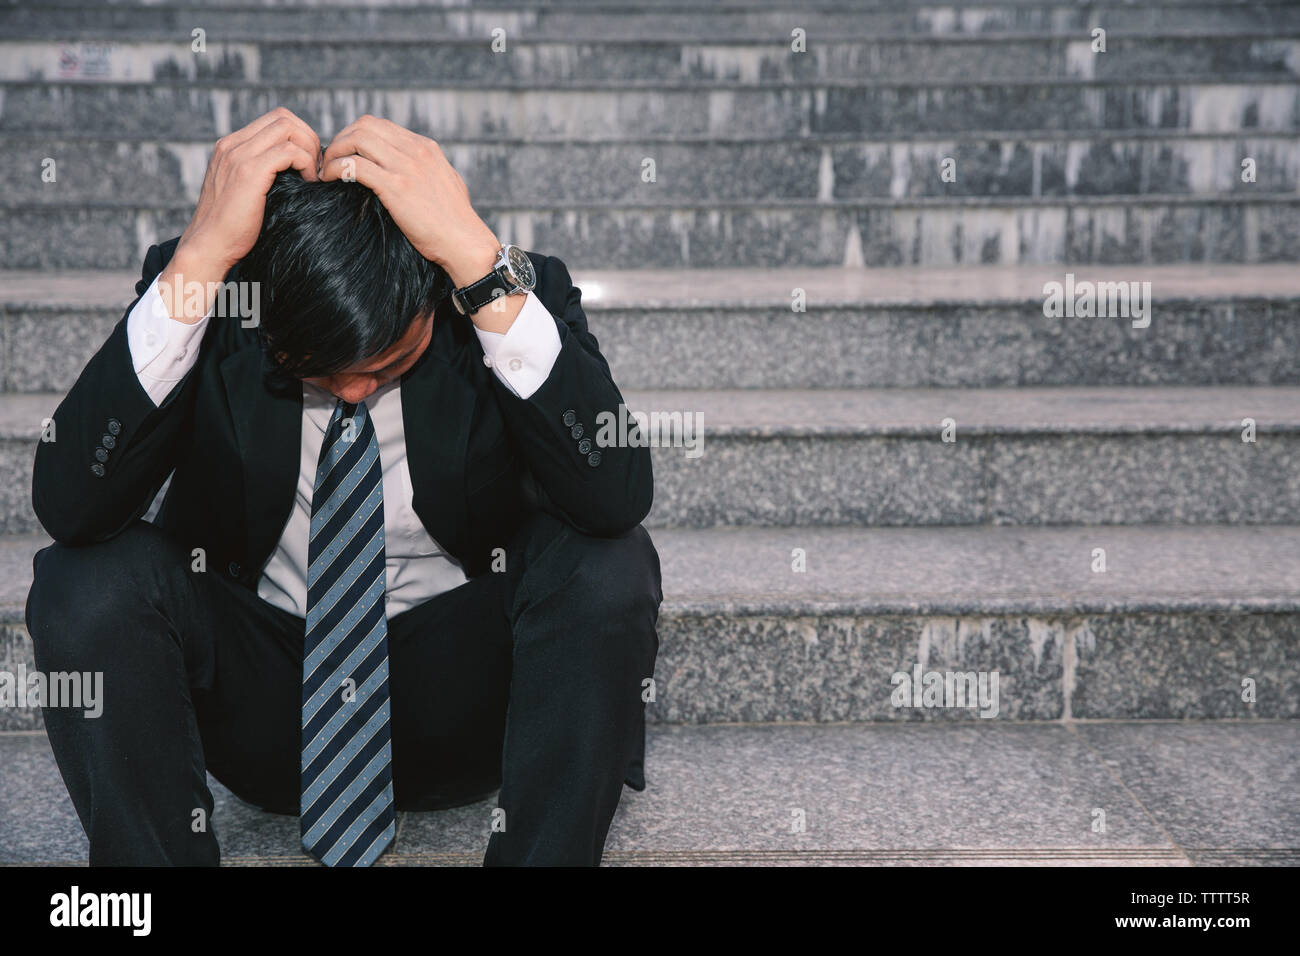 Asiatische Geschäftsleute mit Kopfschmerzen oder Migräne im Rathaus nach der Arbeit Bilder der jungen Unternehmer, die müde sind, Stress, Krise, Depression, failu Stockfoto